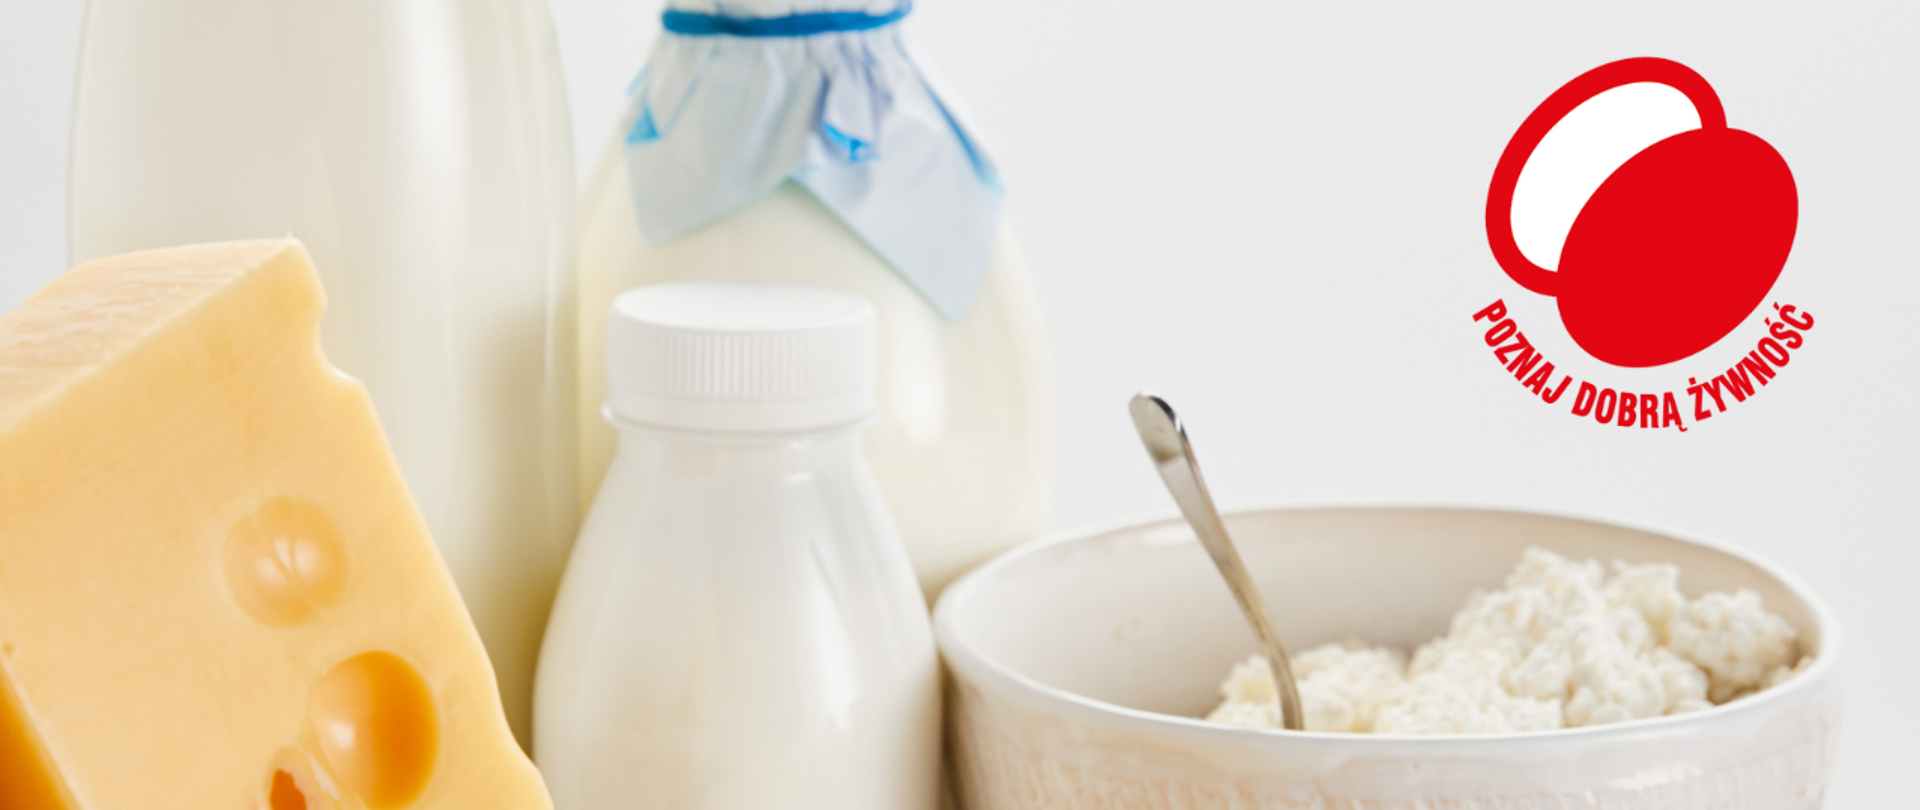 Mleko i jego przetwory w butelkach, ser żółty i twaróg w miseczce. Widoczne jest też logo Poznaj Dobrą Żywność. 